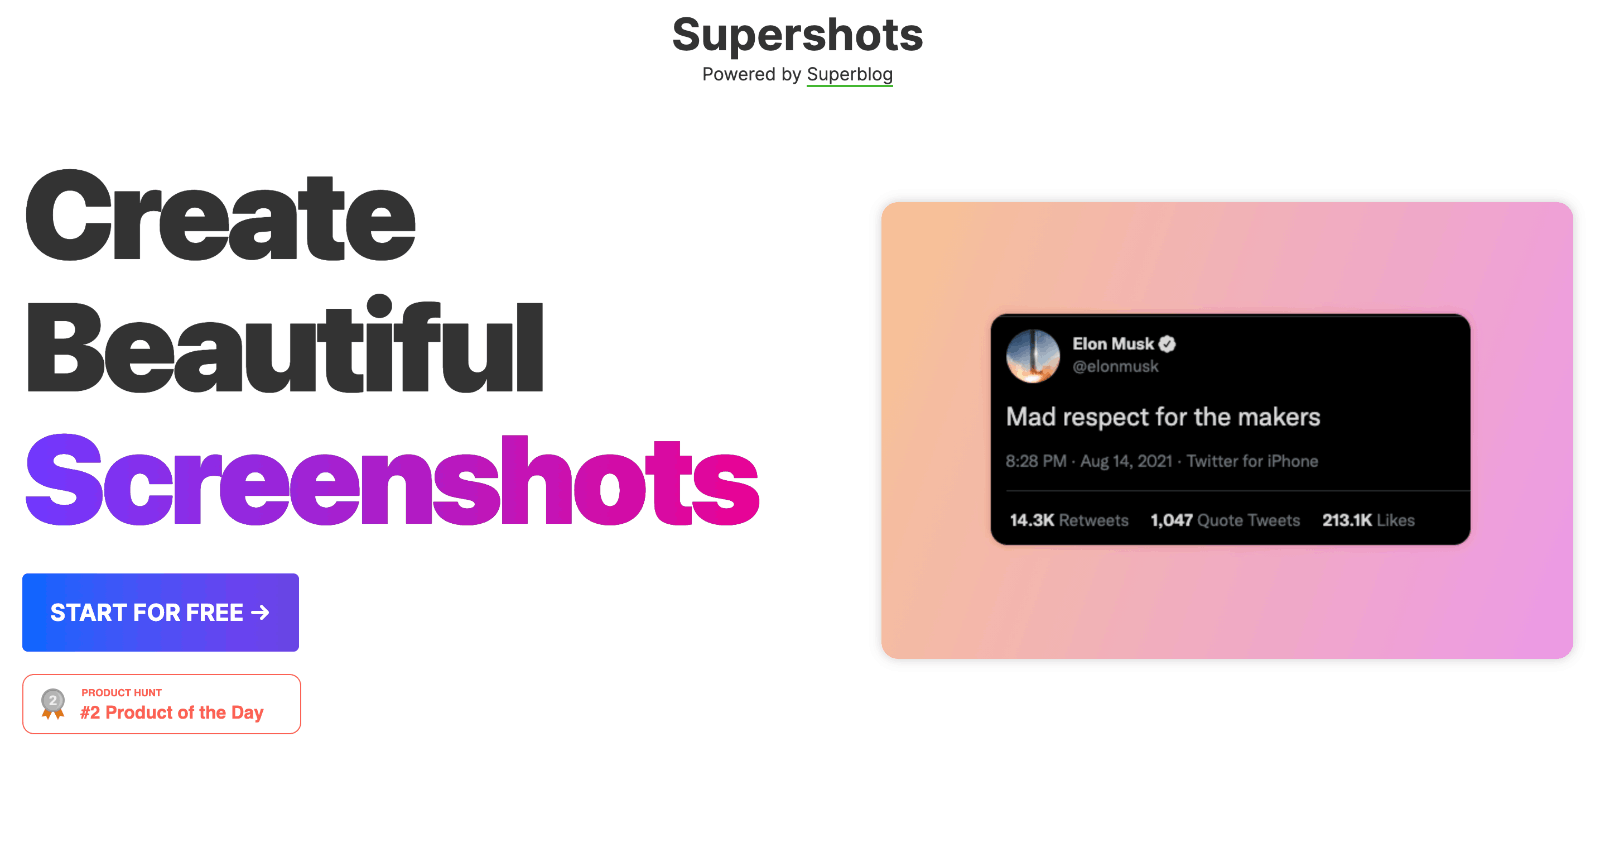 Supershots